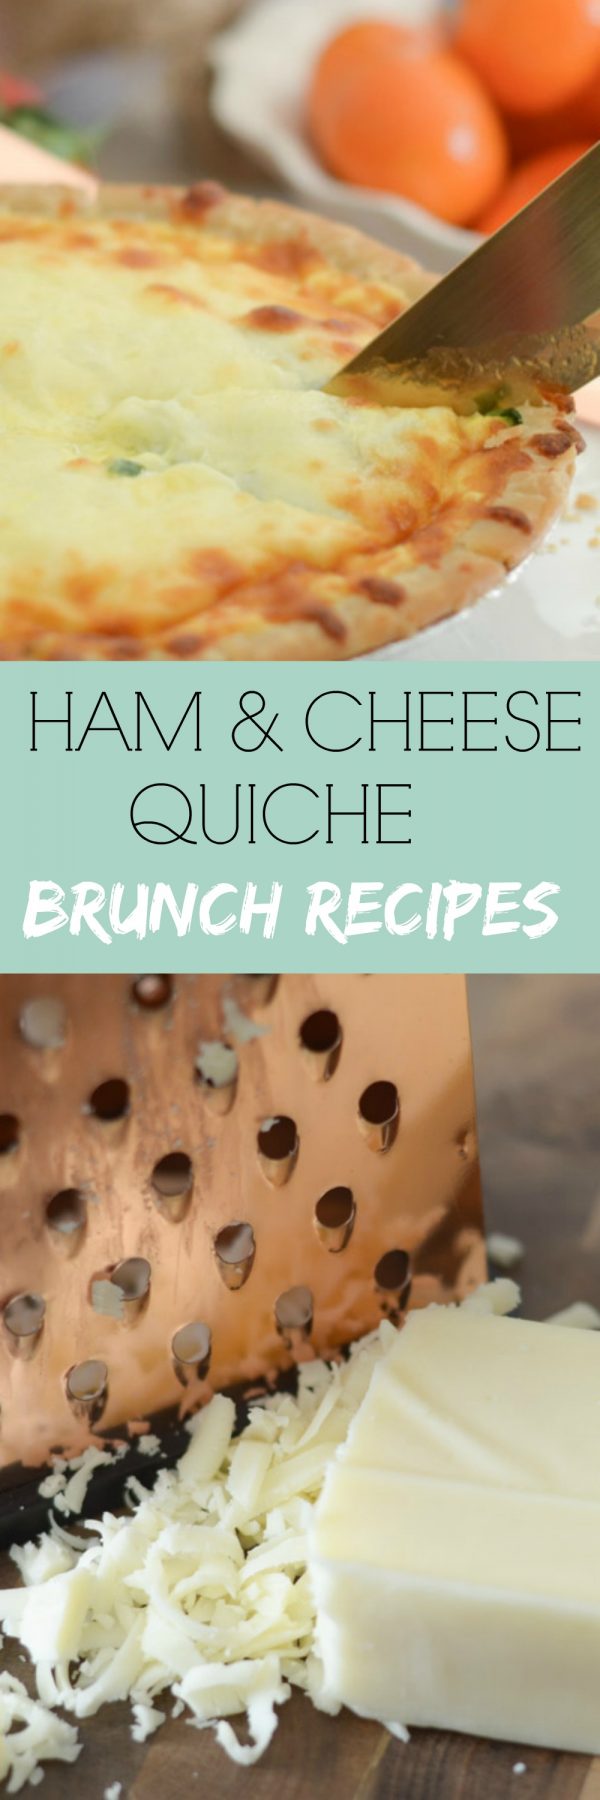 Ham & Cheese Quiche Brunch Recipe